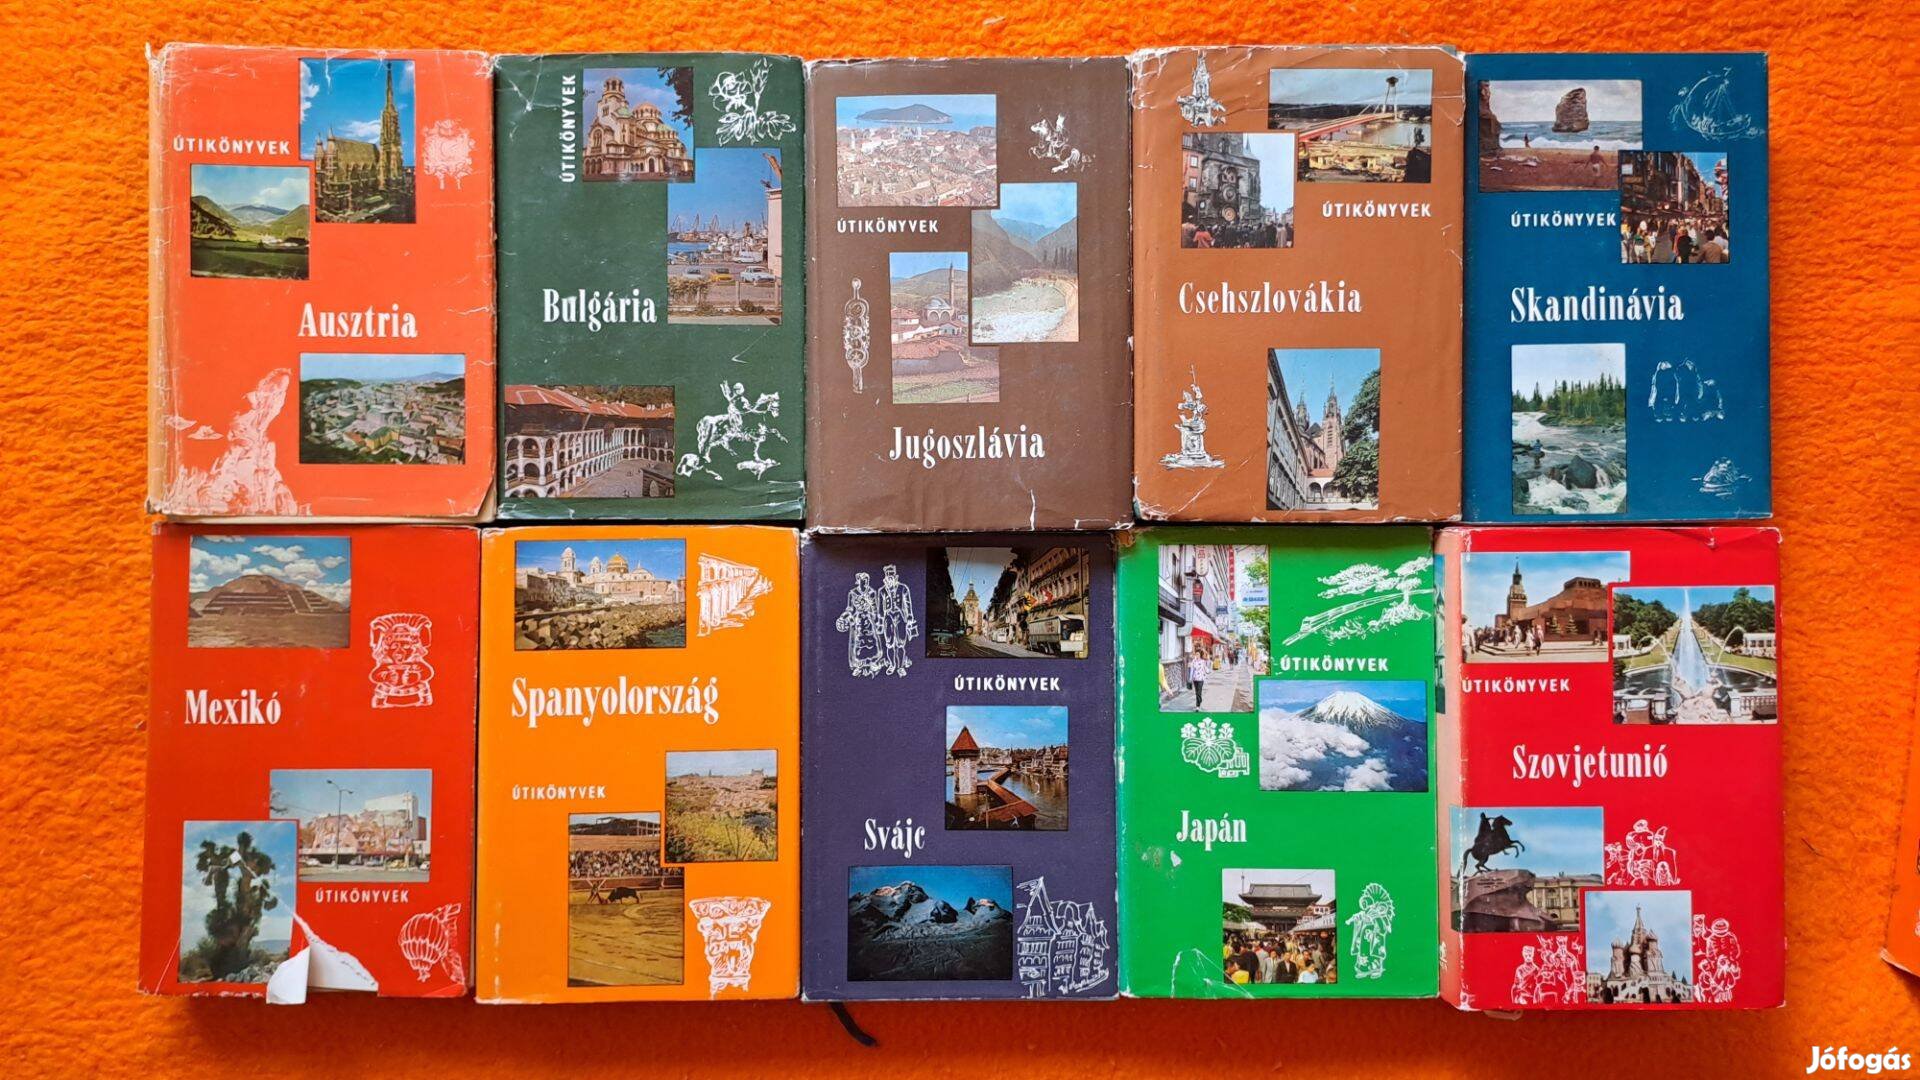 Panoráma Útikönyvek könyvcsomag: Ausztria, Bulgária, Jugoszlávia